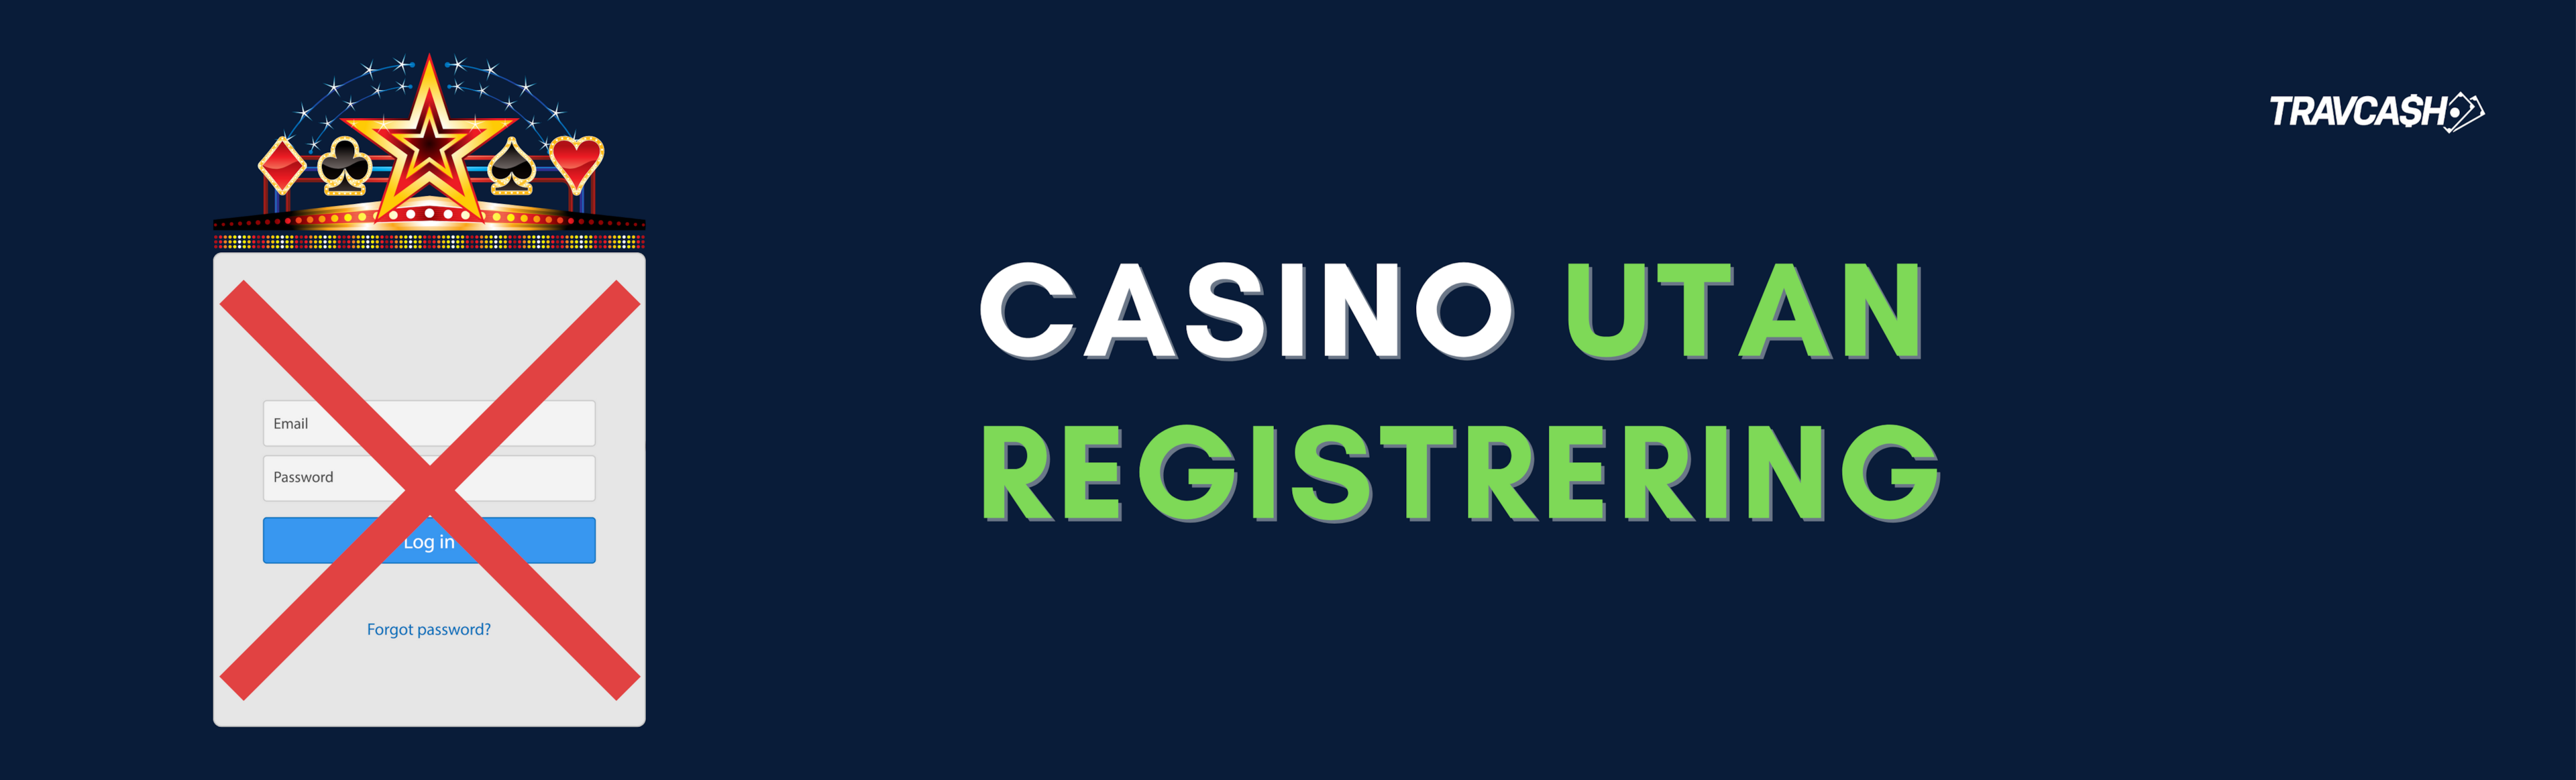 Casino utan registrering 